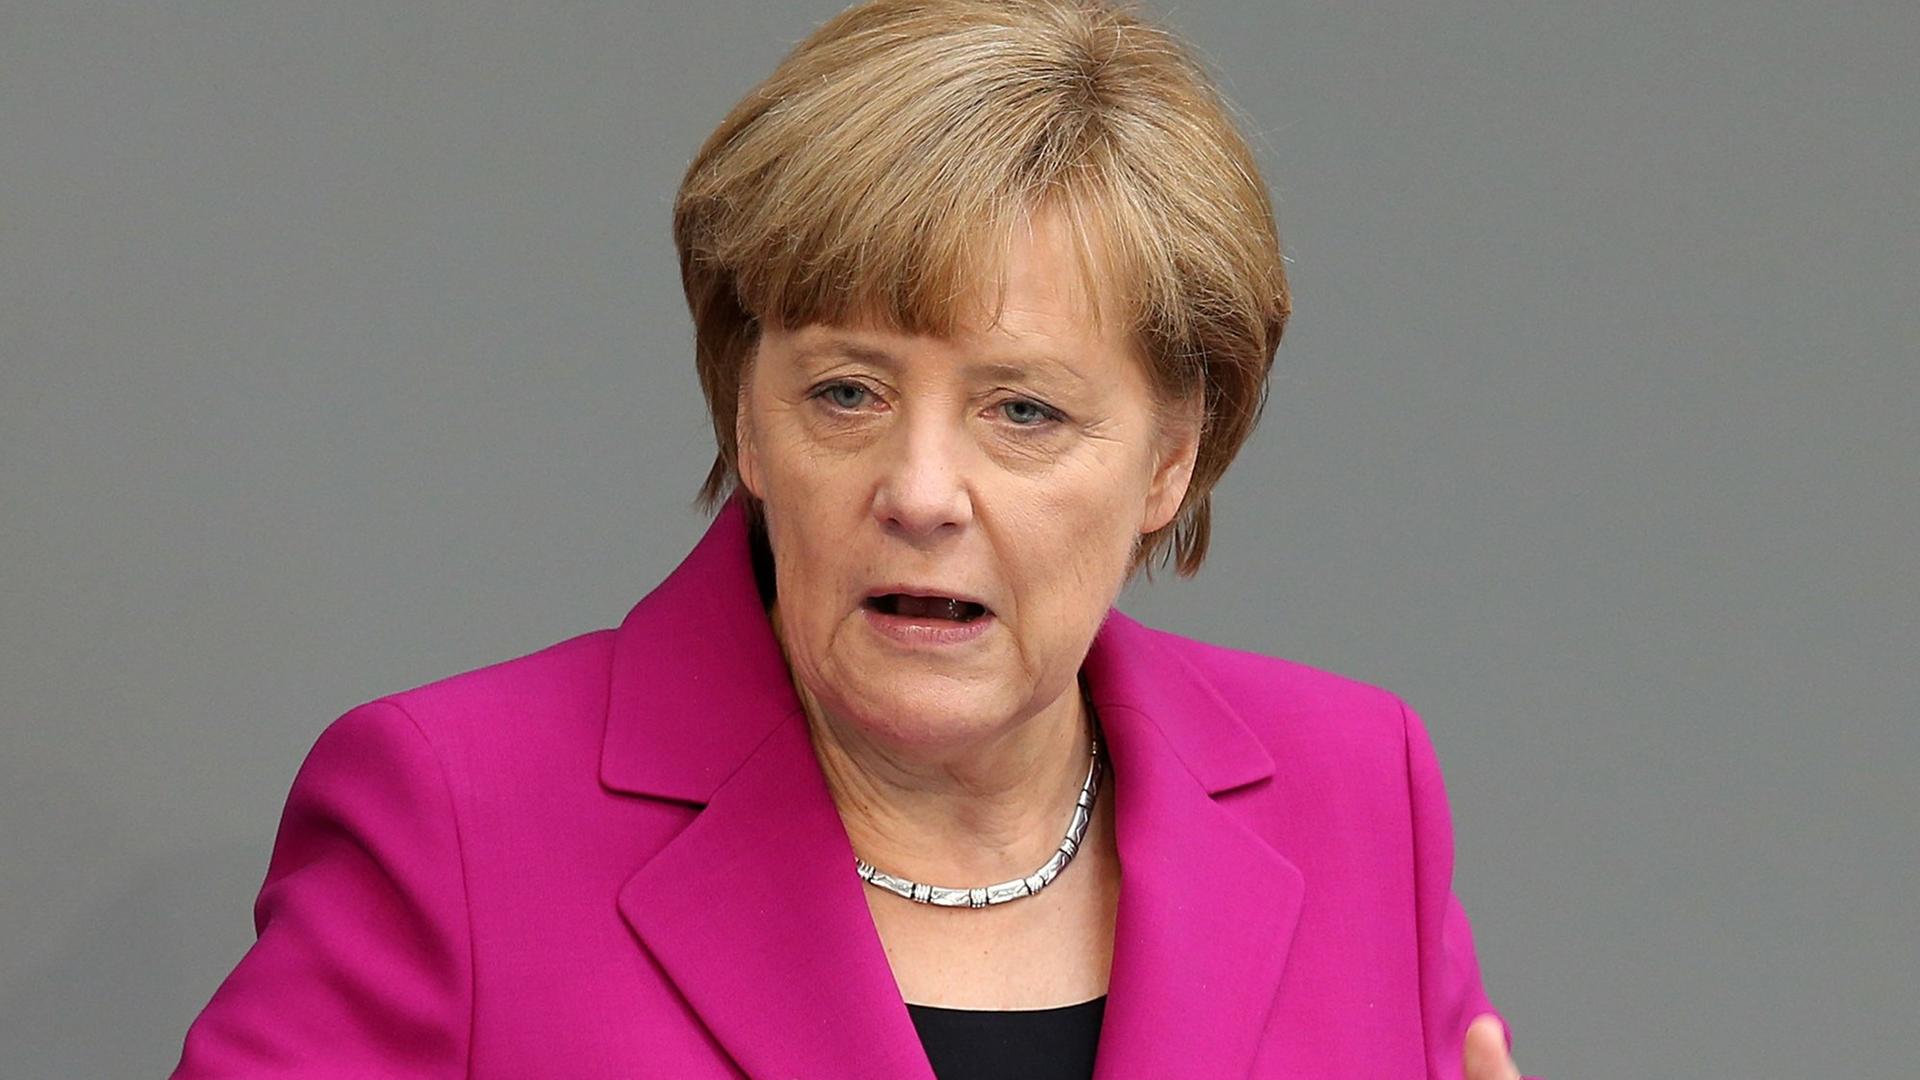 Bundeskanzlerin Angela Merkel (CDU) gibt im Bundestag eine Regierungserklärung zu dem bevorstehenden G-7-Gipfel in Brüssel ab.